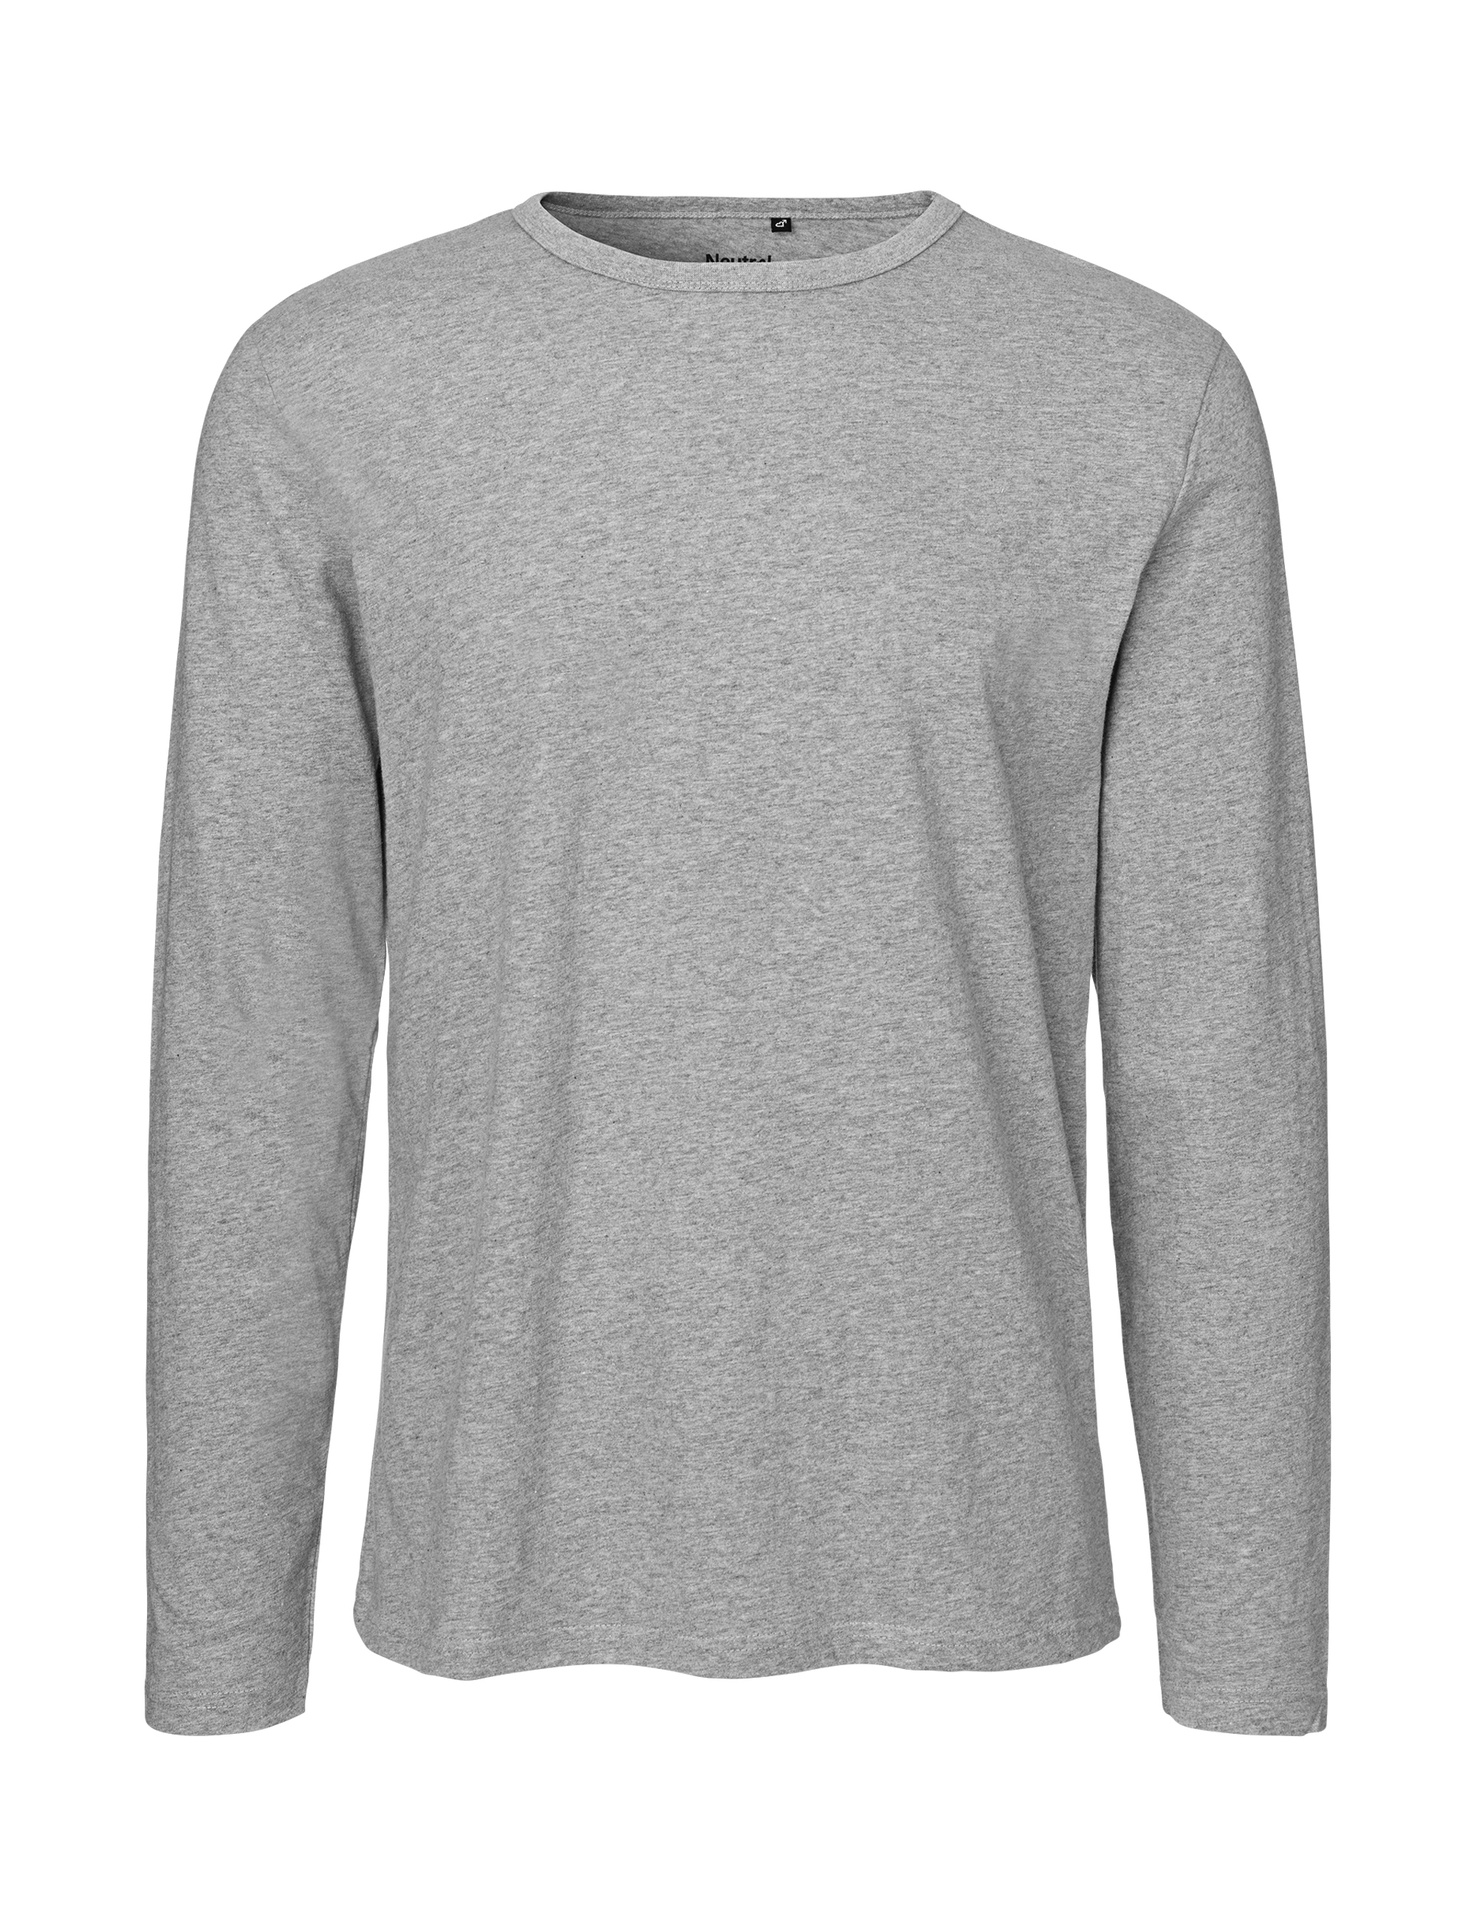 [PR/02401] Mens Long Sleeve T-Shirt (Sport Grey 21, XL)